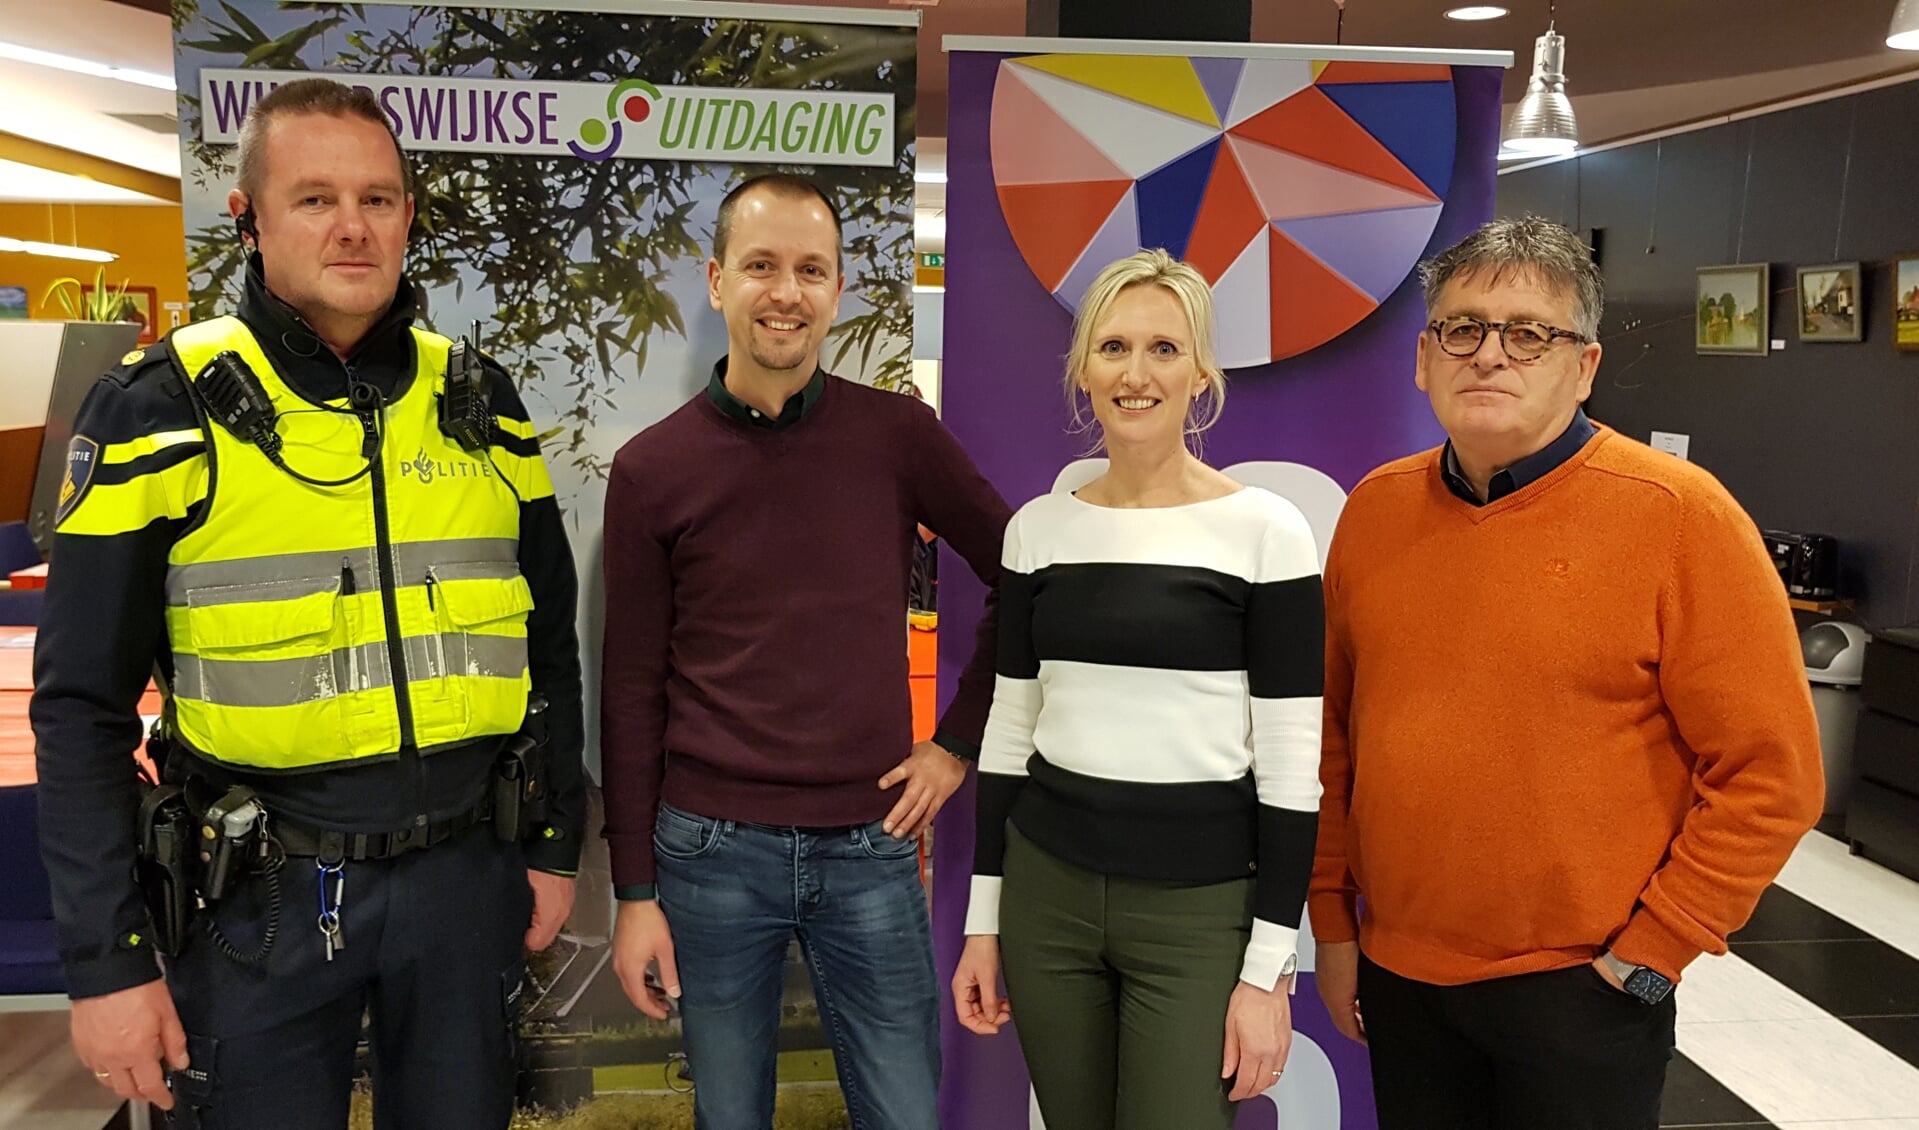 Vlnr Berend Jager (politie), Kars Engwirda (esselink.nu), Jaschenka Plekenpol (SNS) en Harry Garritsen (Winterswijkse Uitdaging).  Foto: Han van de Laar